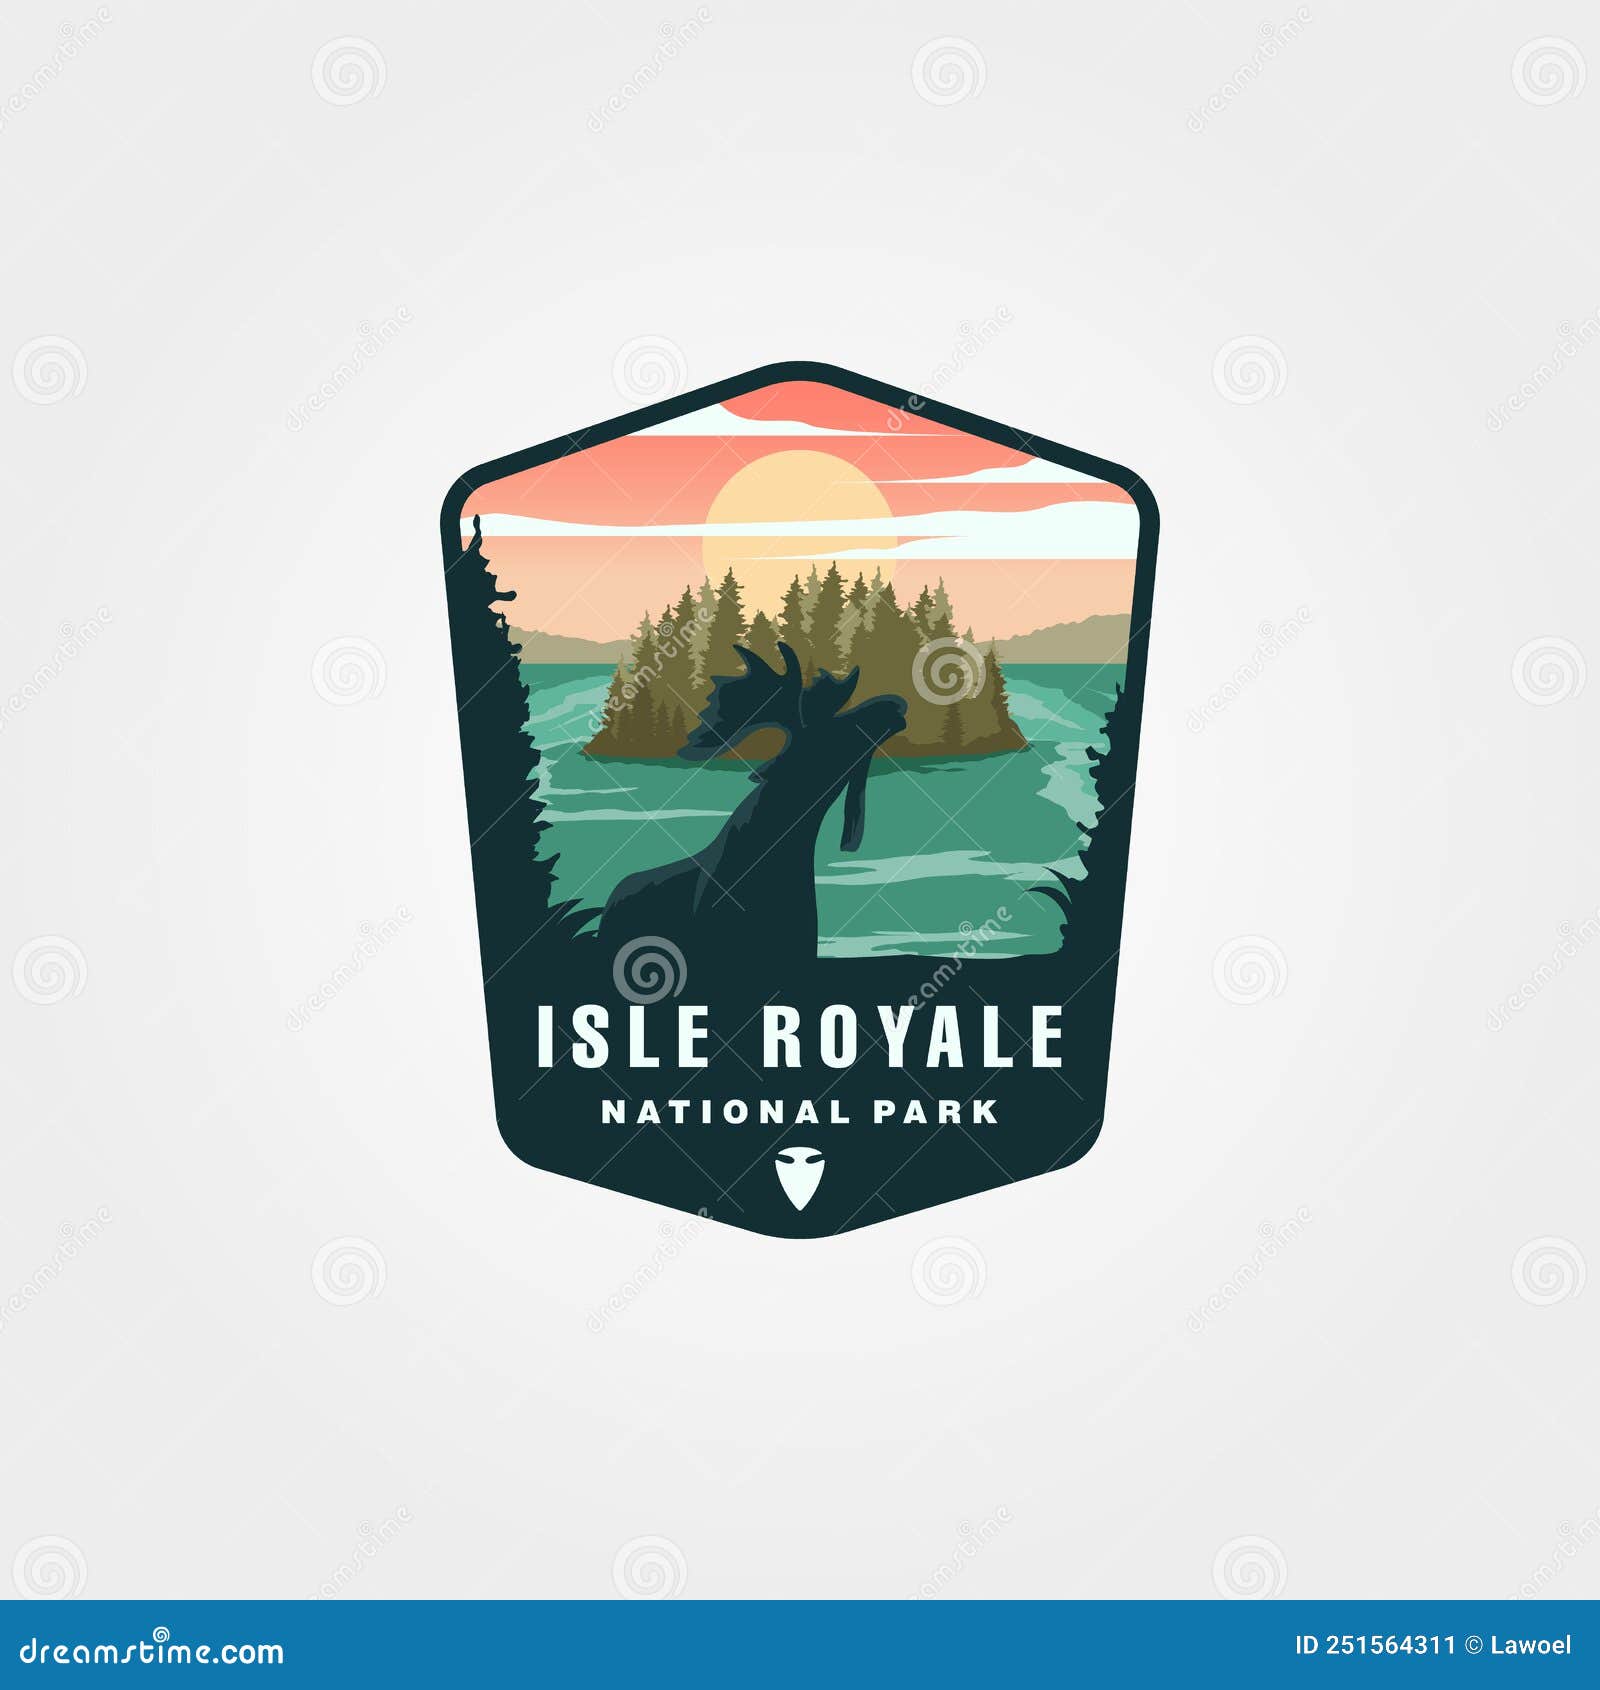 isle royale national park  patch logo , united states national park emblem 